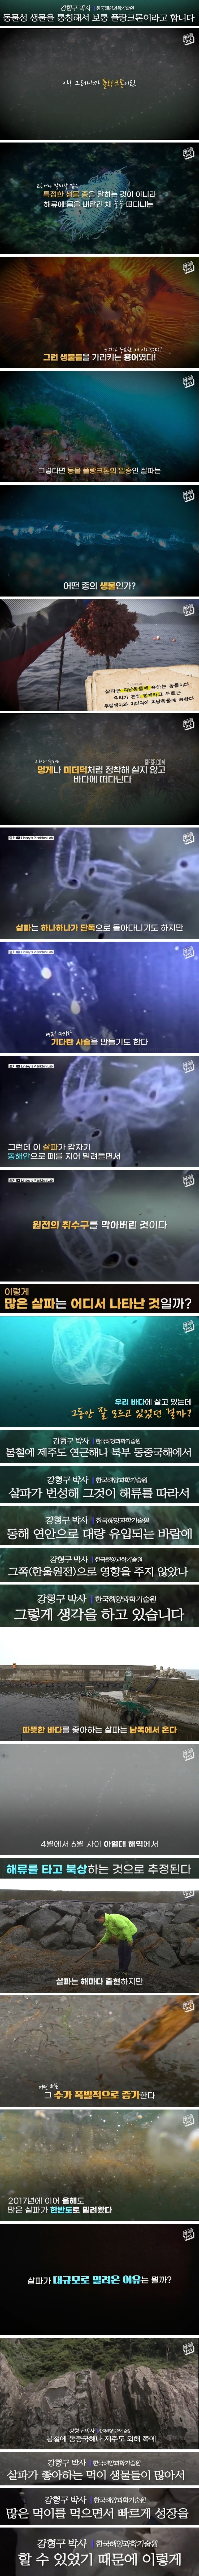 원전 두 번 마비시킨 기괴한 해양생물의 실체 (2).jpg